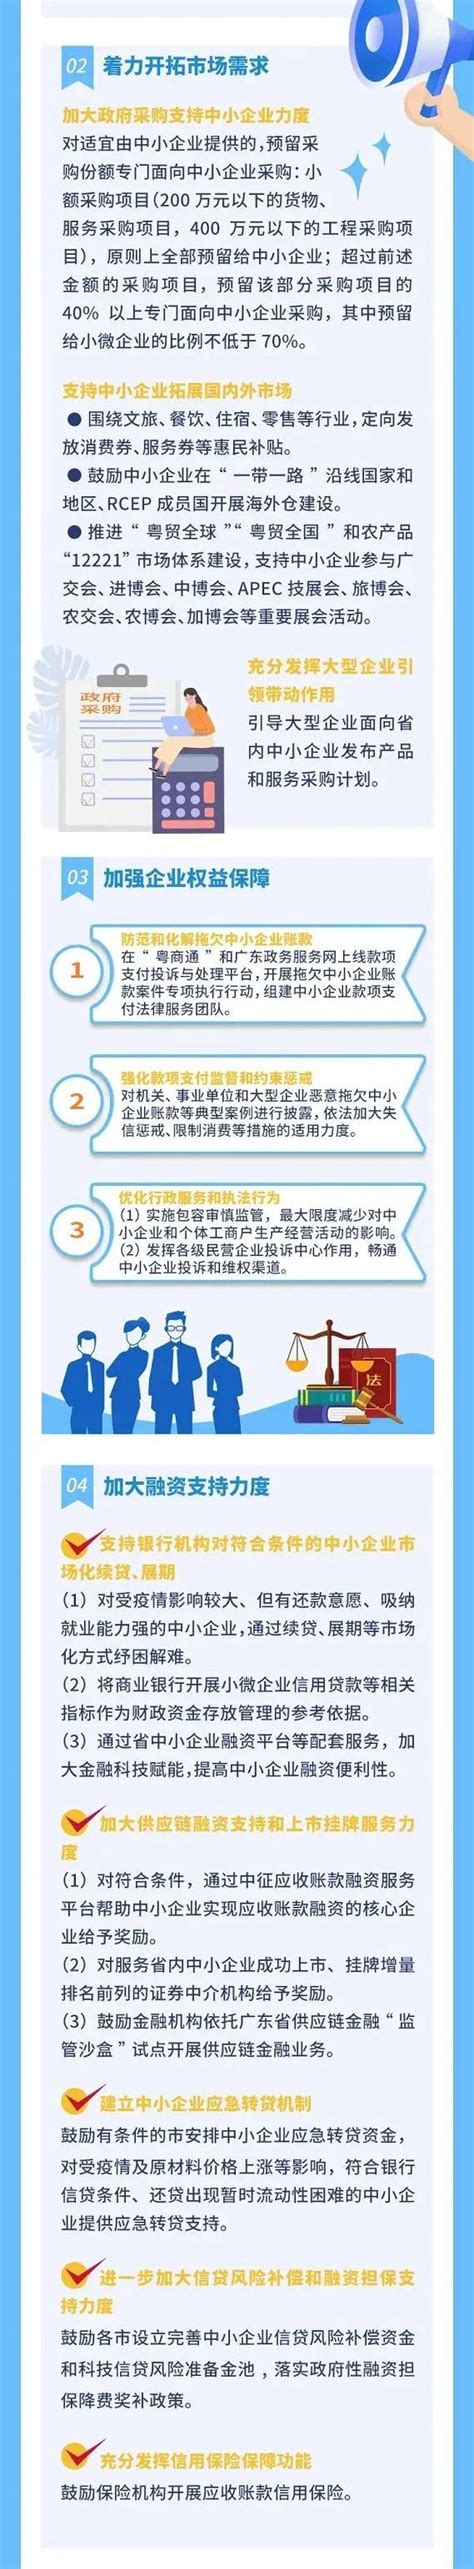 【政策扶持】广东省激发企业活力推动高质量发展若干政策措施-世展网